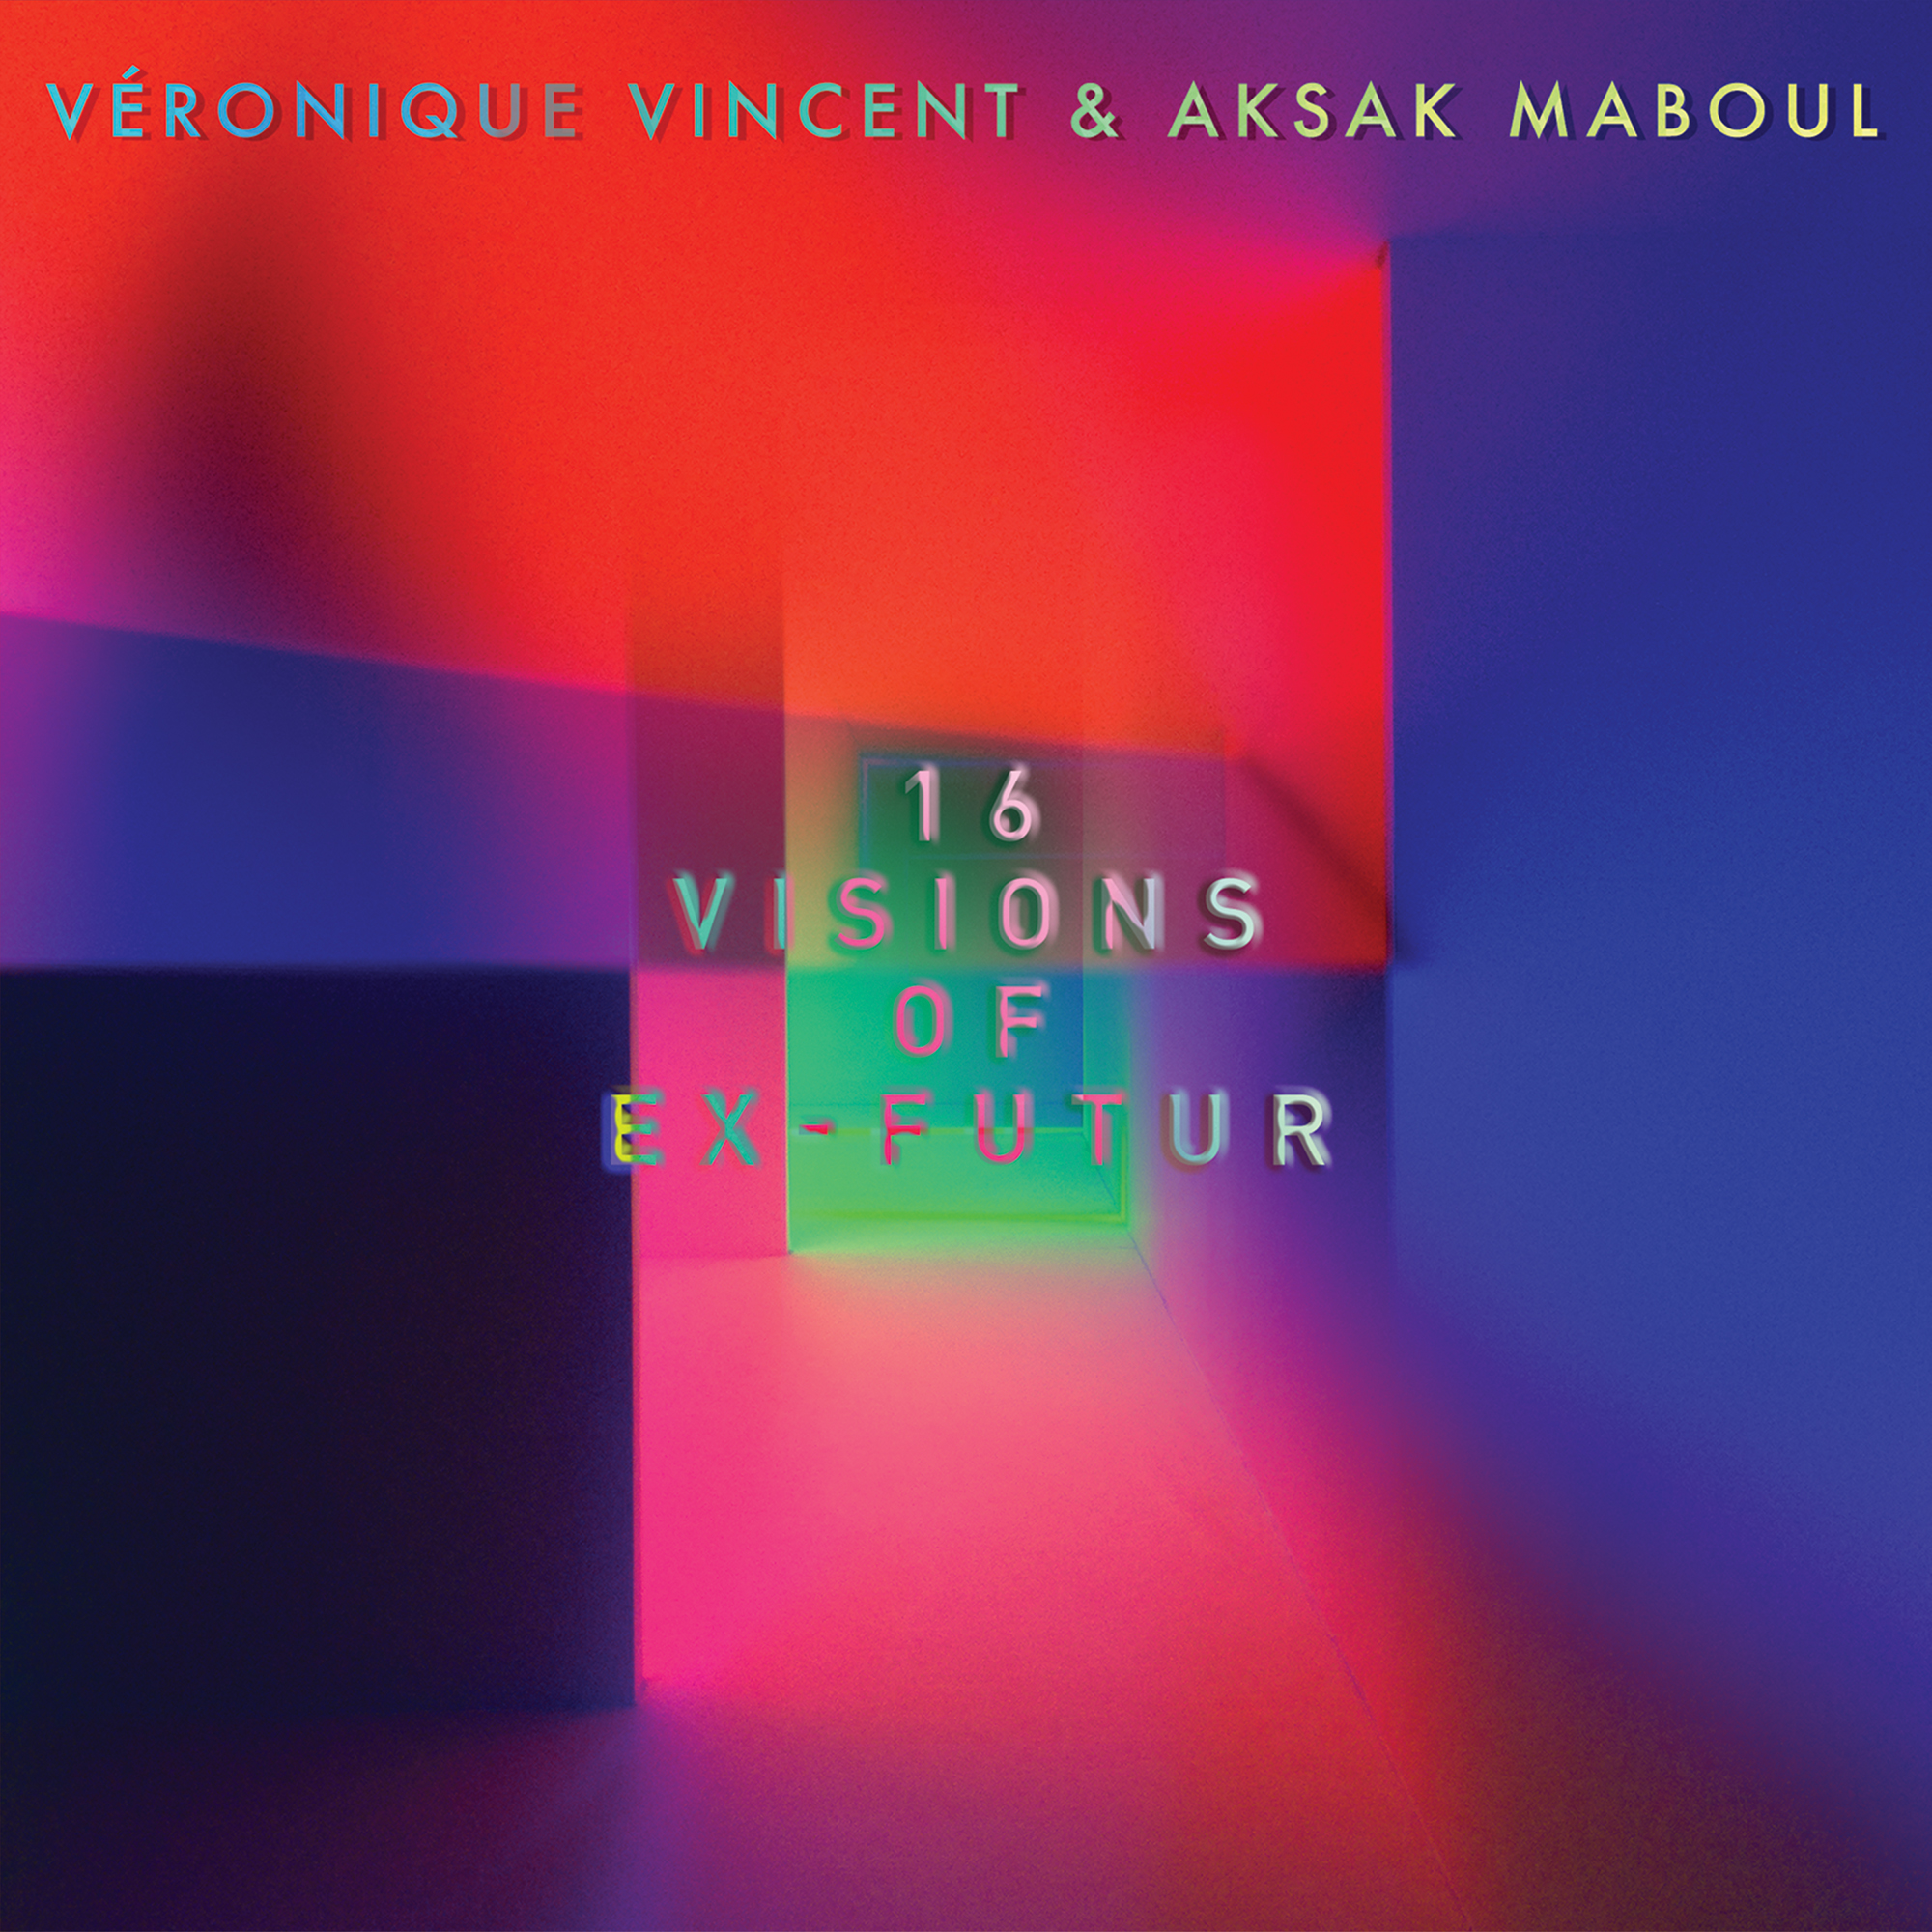 VéRONIQUE VINCENT & AKSAK MABOUL - 16 Visions of Ex-Futur